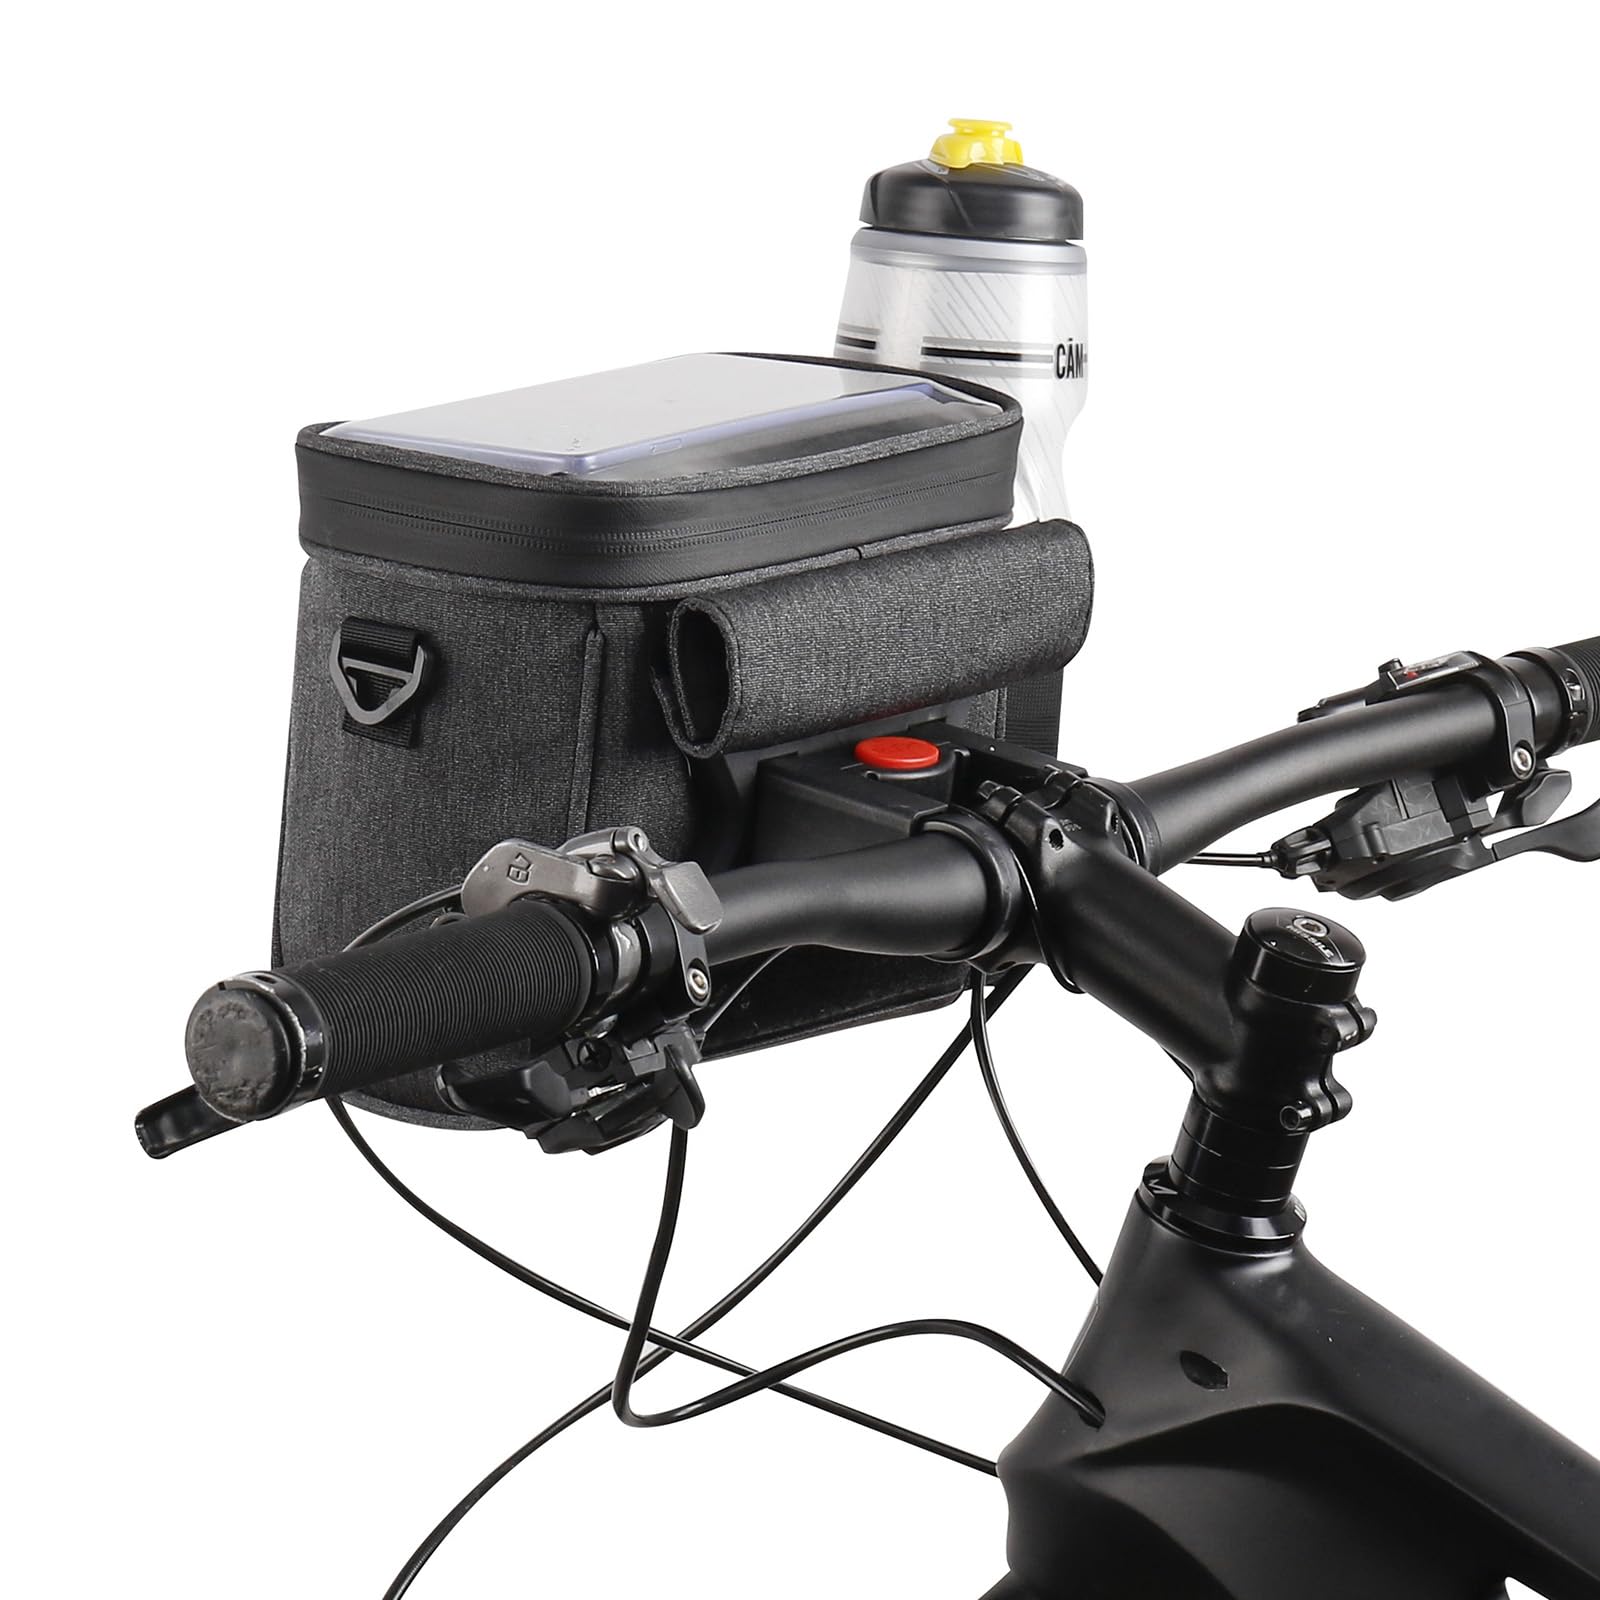 BBTISG Fahrrad Lenkertasche, 5L Wasserdicht Fahrradtasche Fahrradkorb vorne Tasche mit Touchscreen Vorne Lenkeradapter und Schultergurt für E-Bike MTB Rennrad Scooter von BBTISG